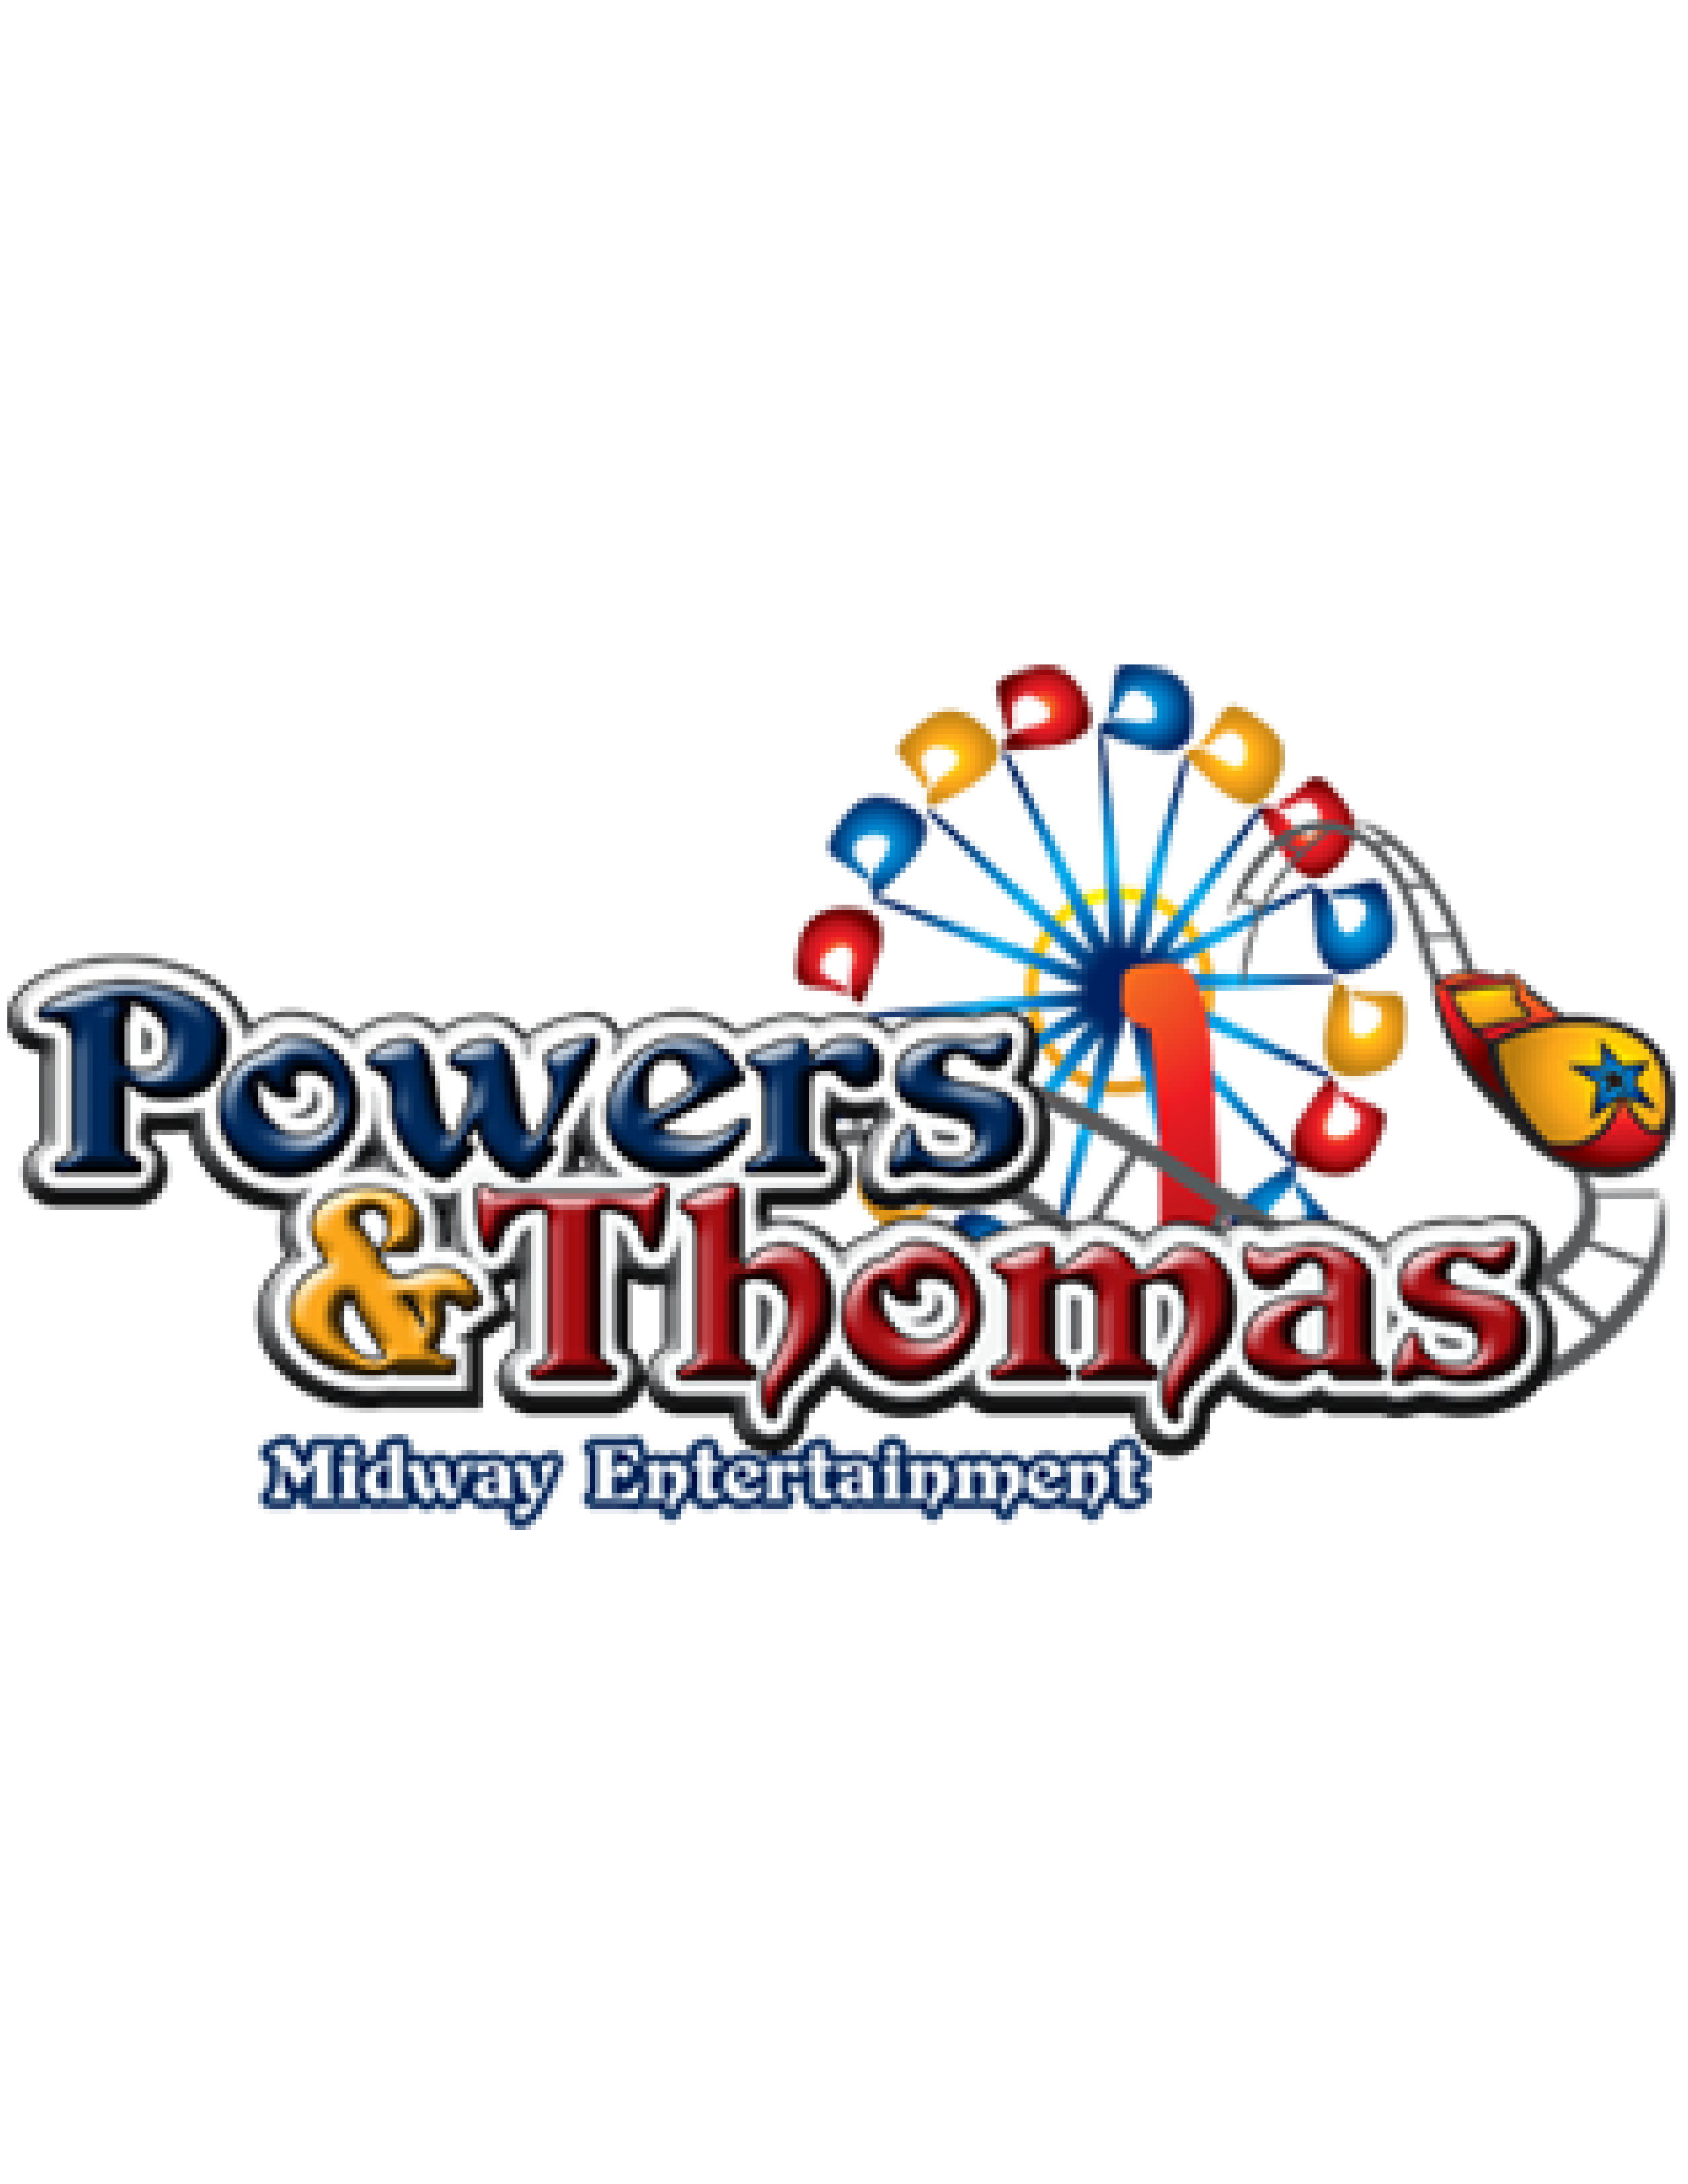 Powers & Thomas Midway Entertainment